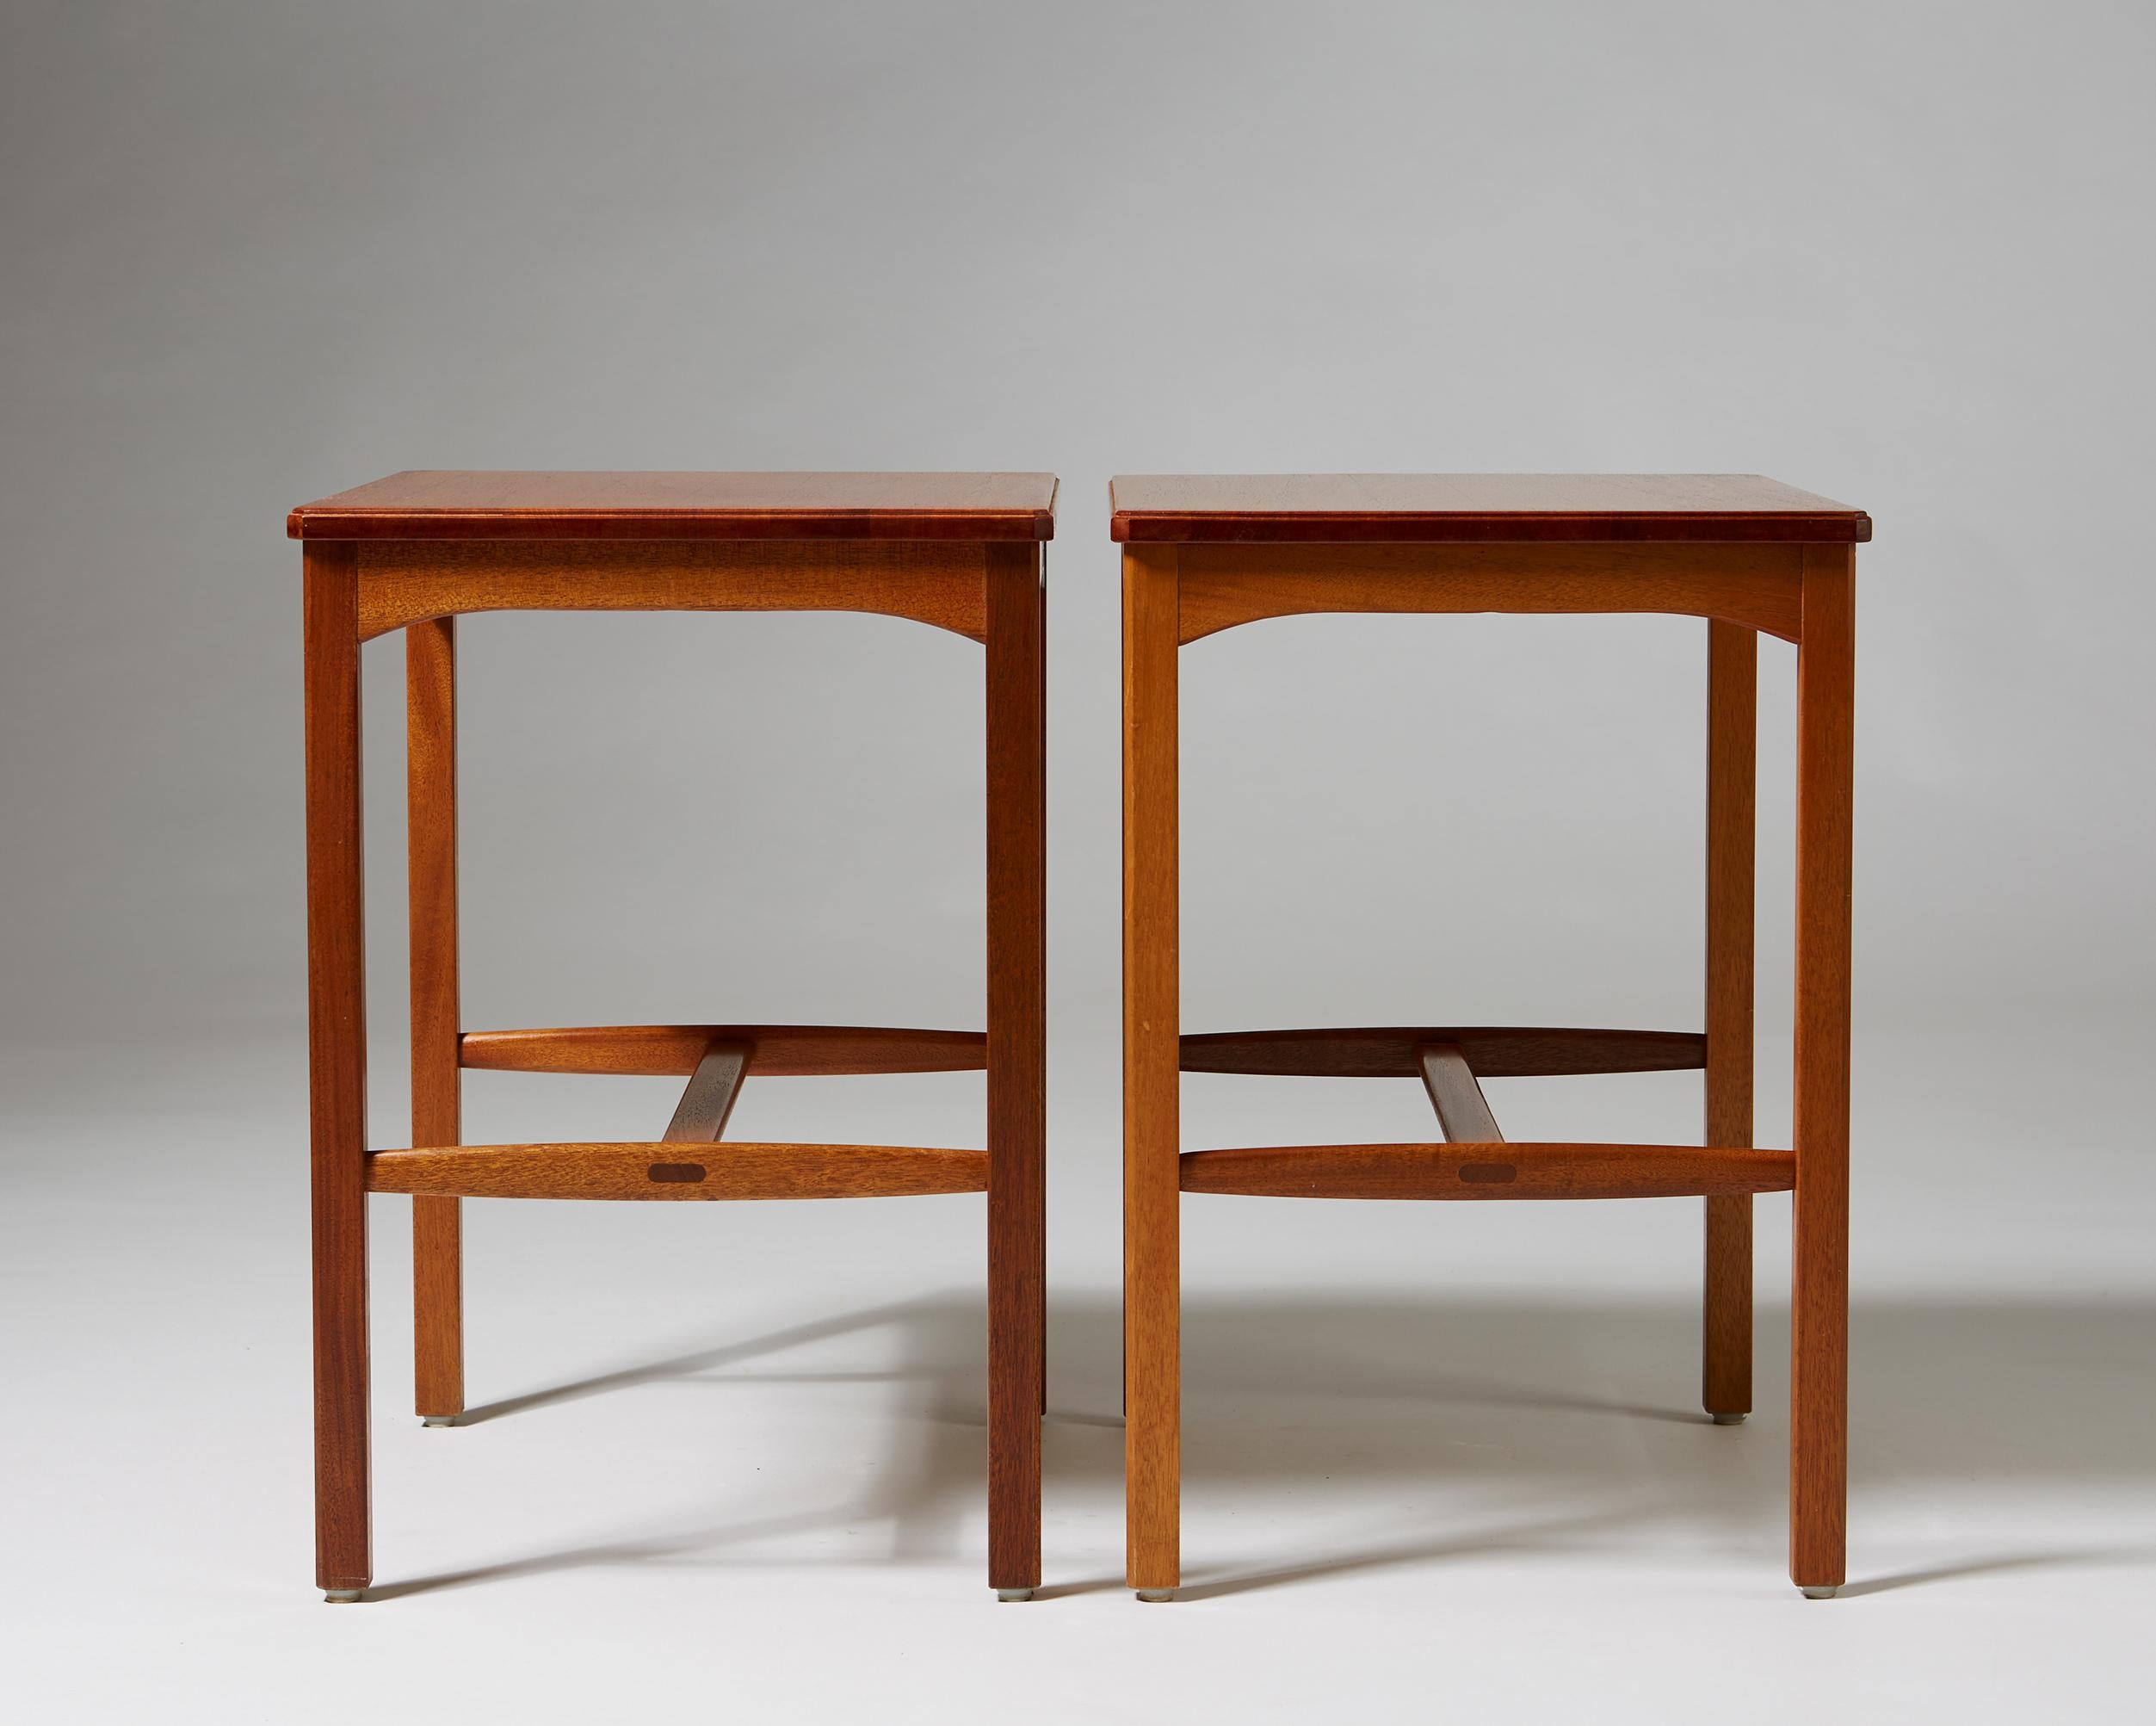 Scandinavian Modern Pair of Side Tables Designed by Carl Malmsten for Carl Löfving & Söner, Sweden